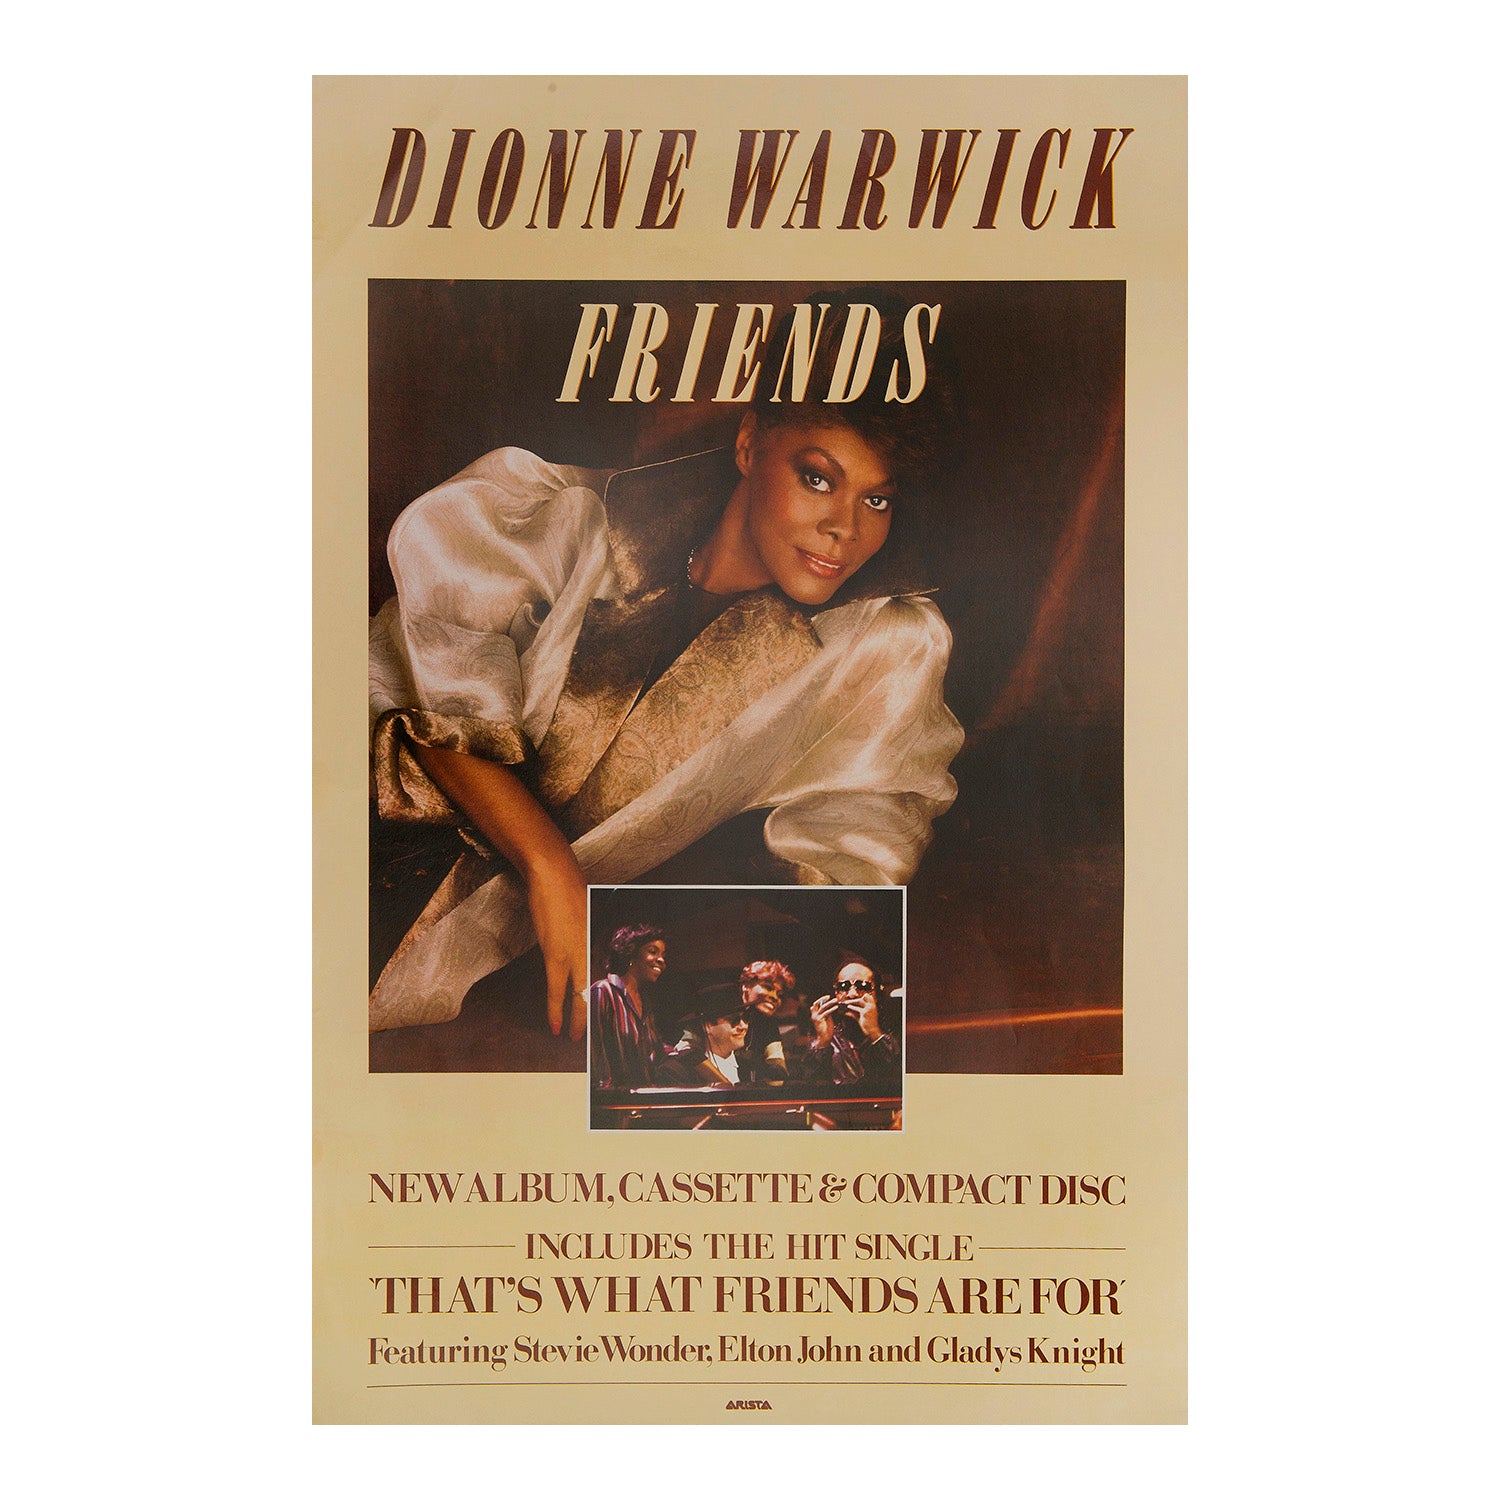 Friends. Dionne Warwick